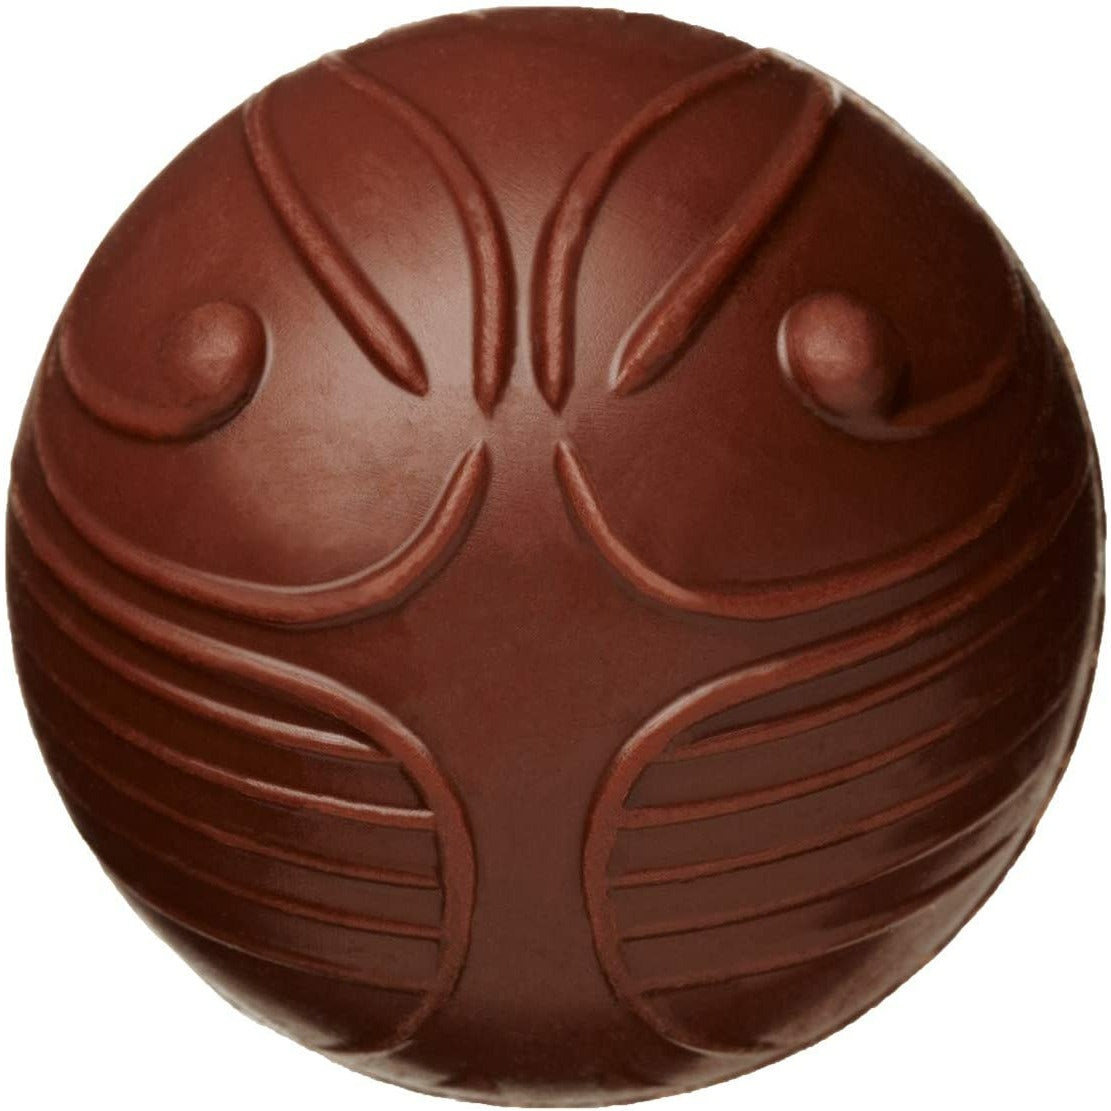 Le Vif d’Or en chocolat, une petite balle avec des motifs linéaires